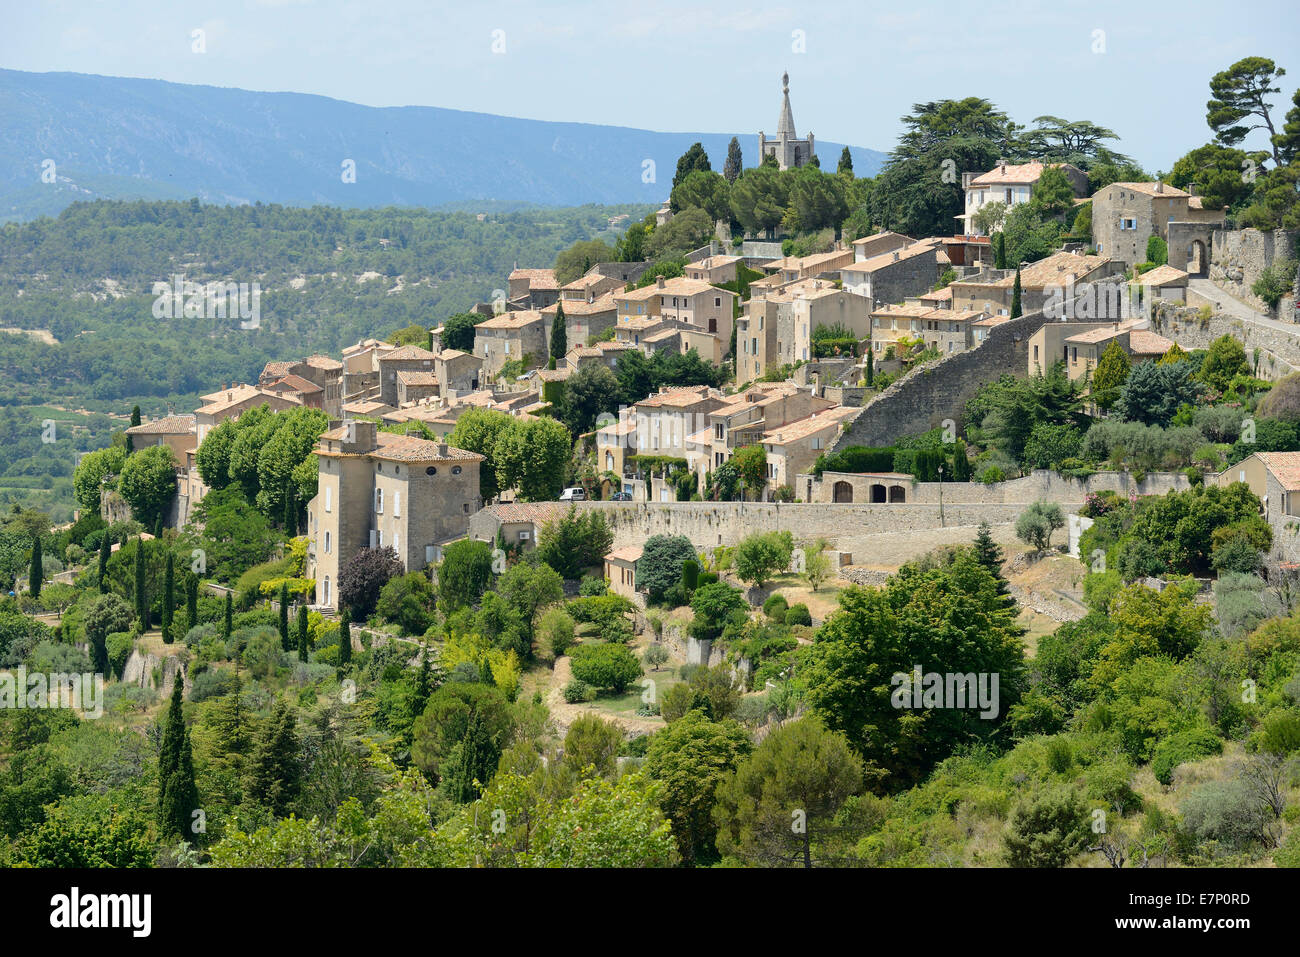 Europe, France, Provence-Alpes-Côte d'Azur, Provence, Vaucluse, department, Bonnieux, village Stock Photo